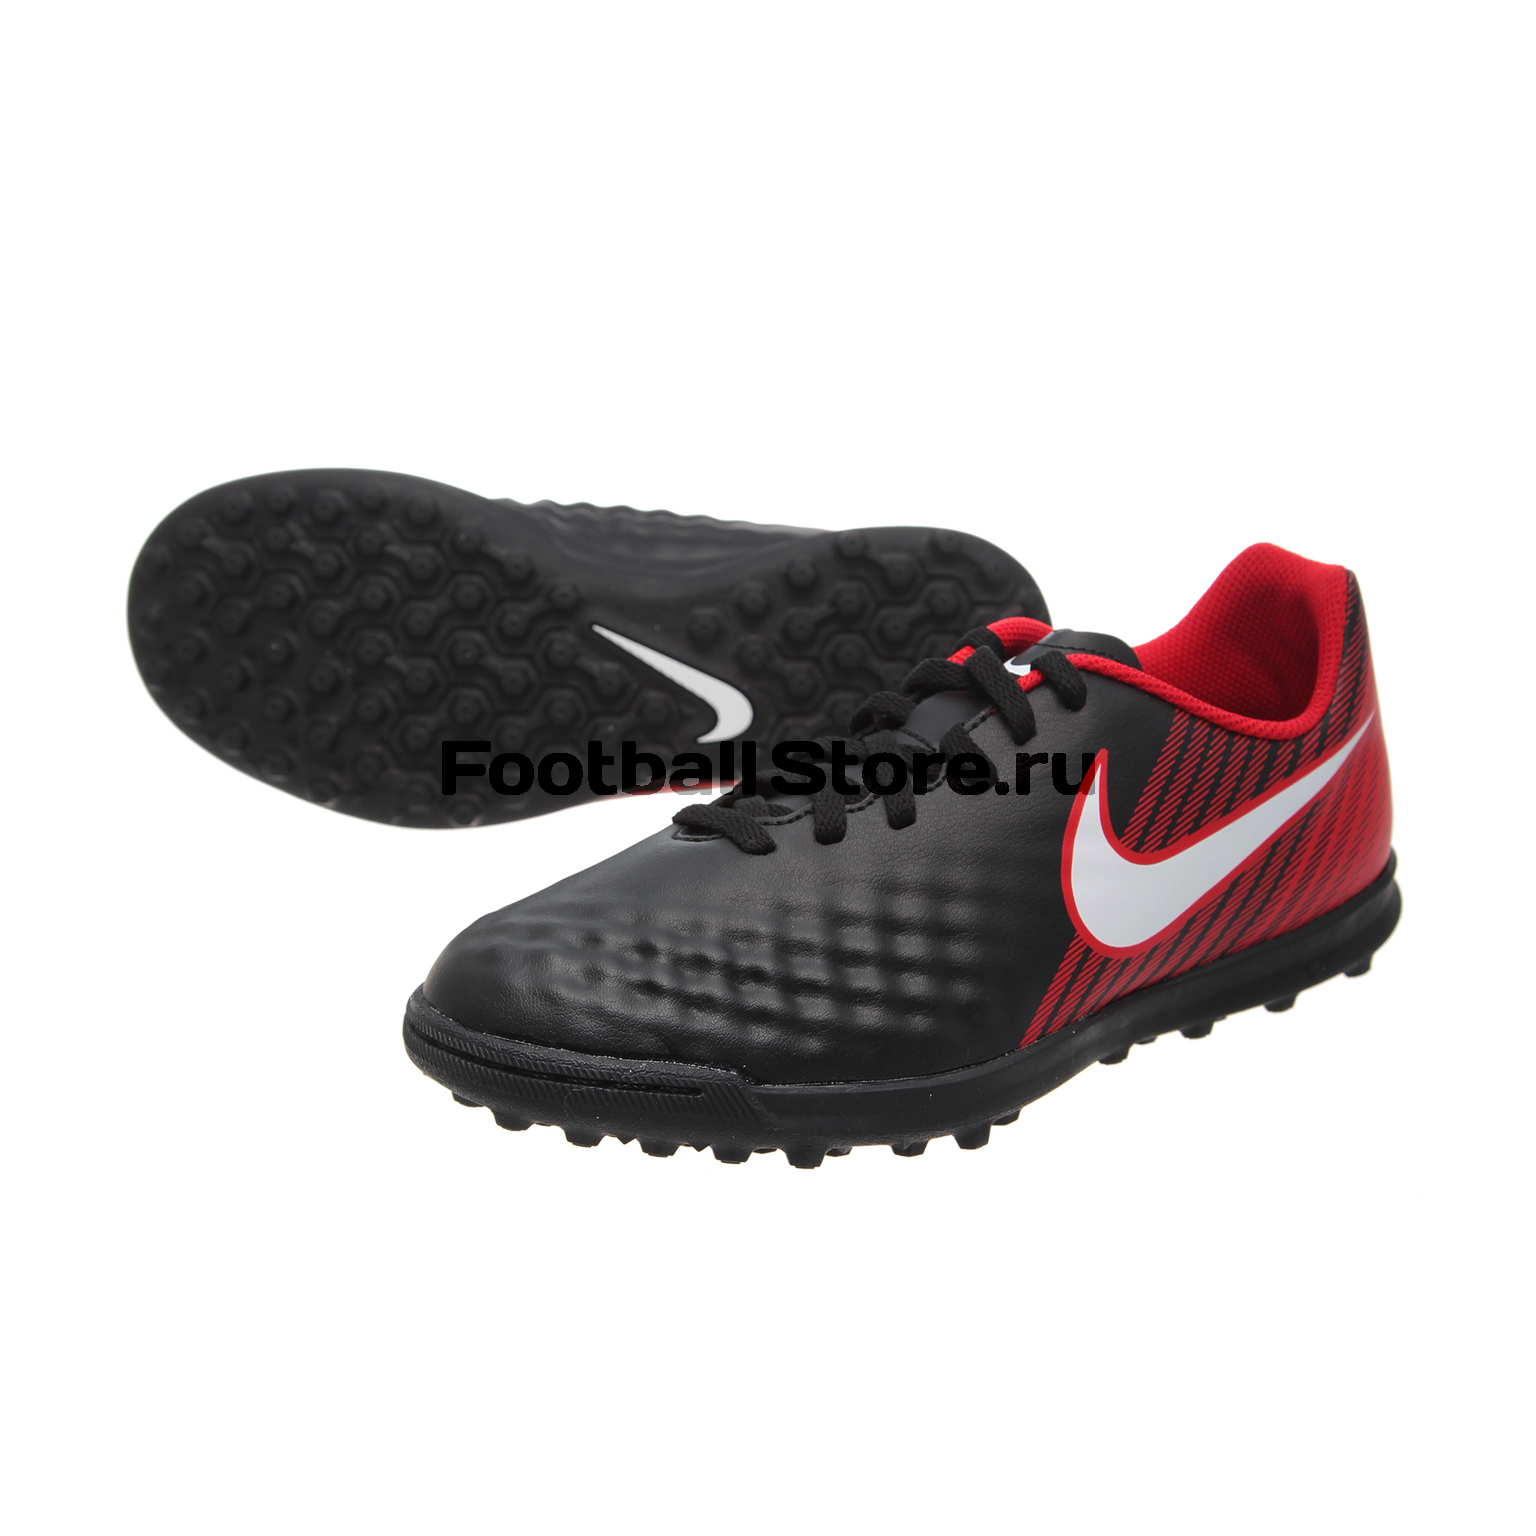 Шиповки детские Nike MagistaX Ola II TF 844416-061